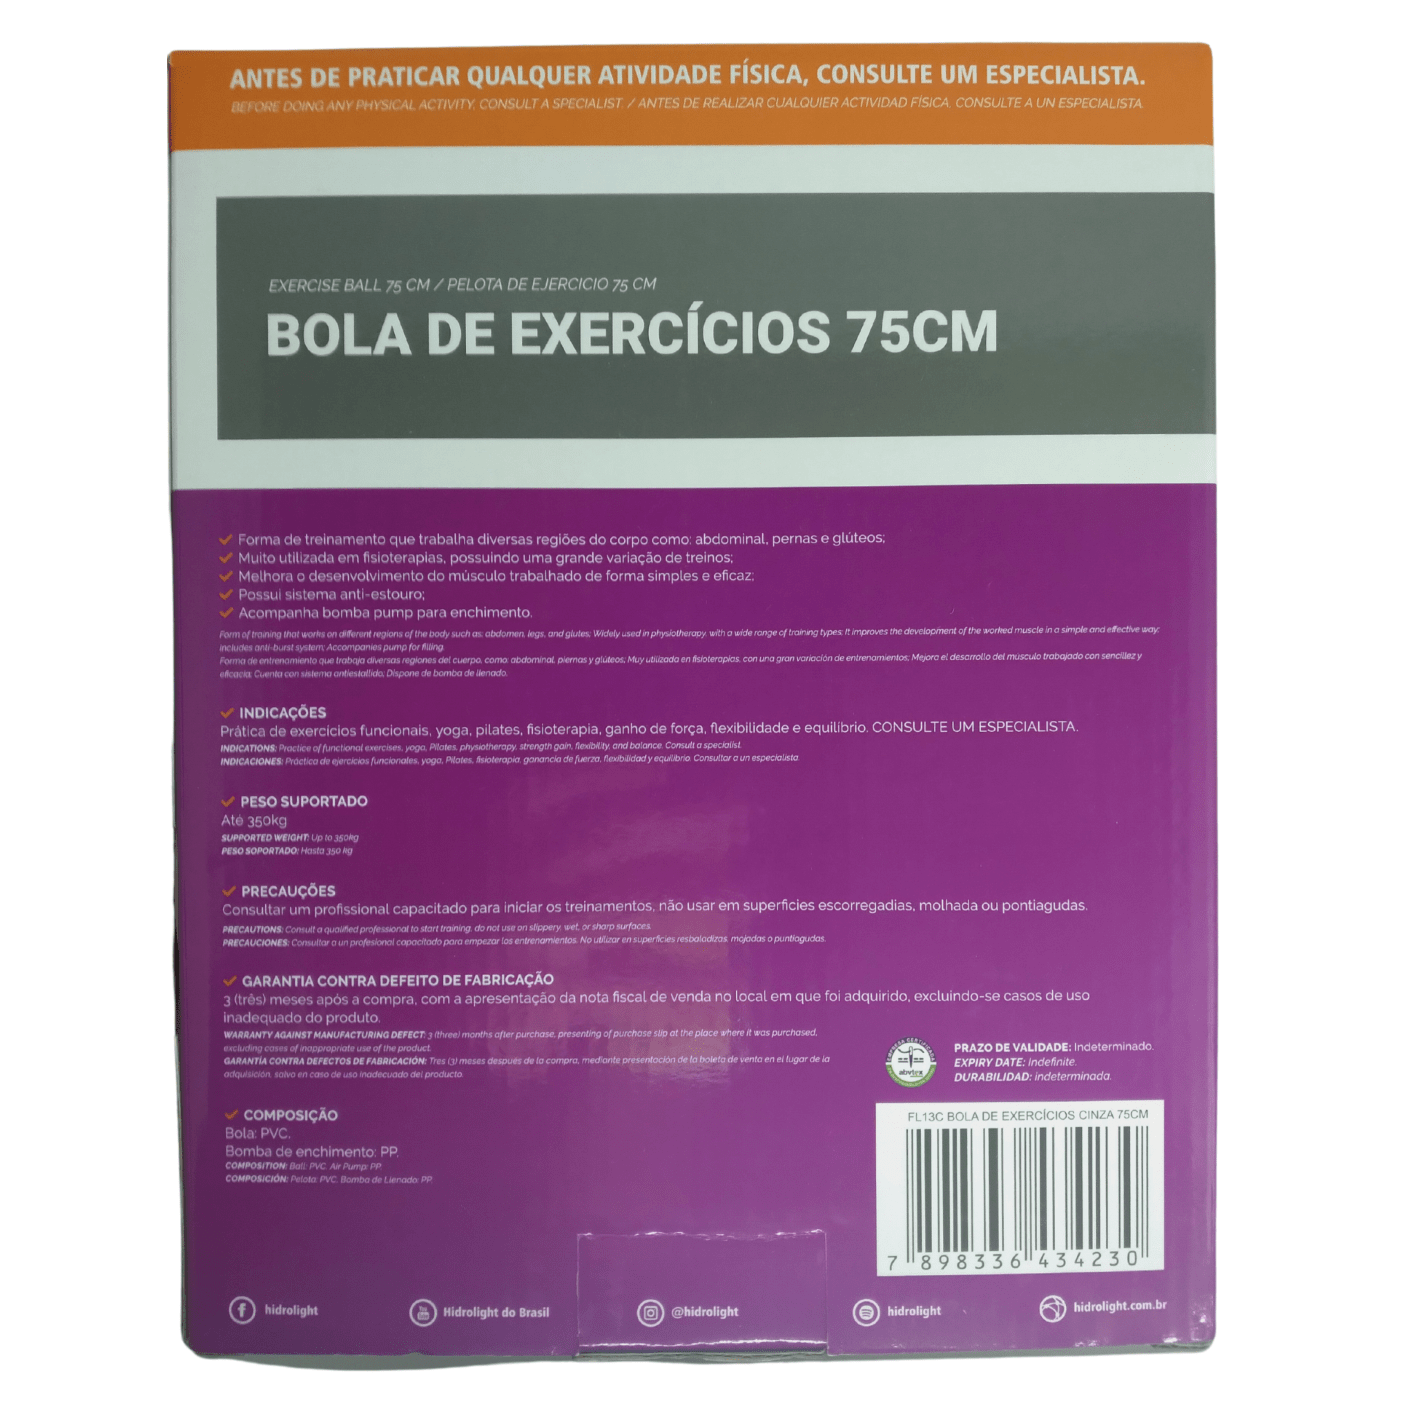 BOLA DE EXERCICIOS (65CM) HIDROLIGHT - NITRO suplementos alimentares,  creatinas, whey protein e acessórios